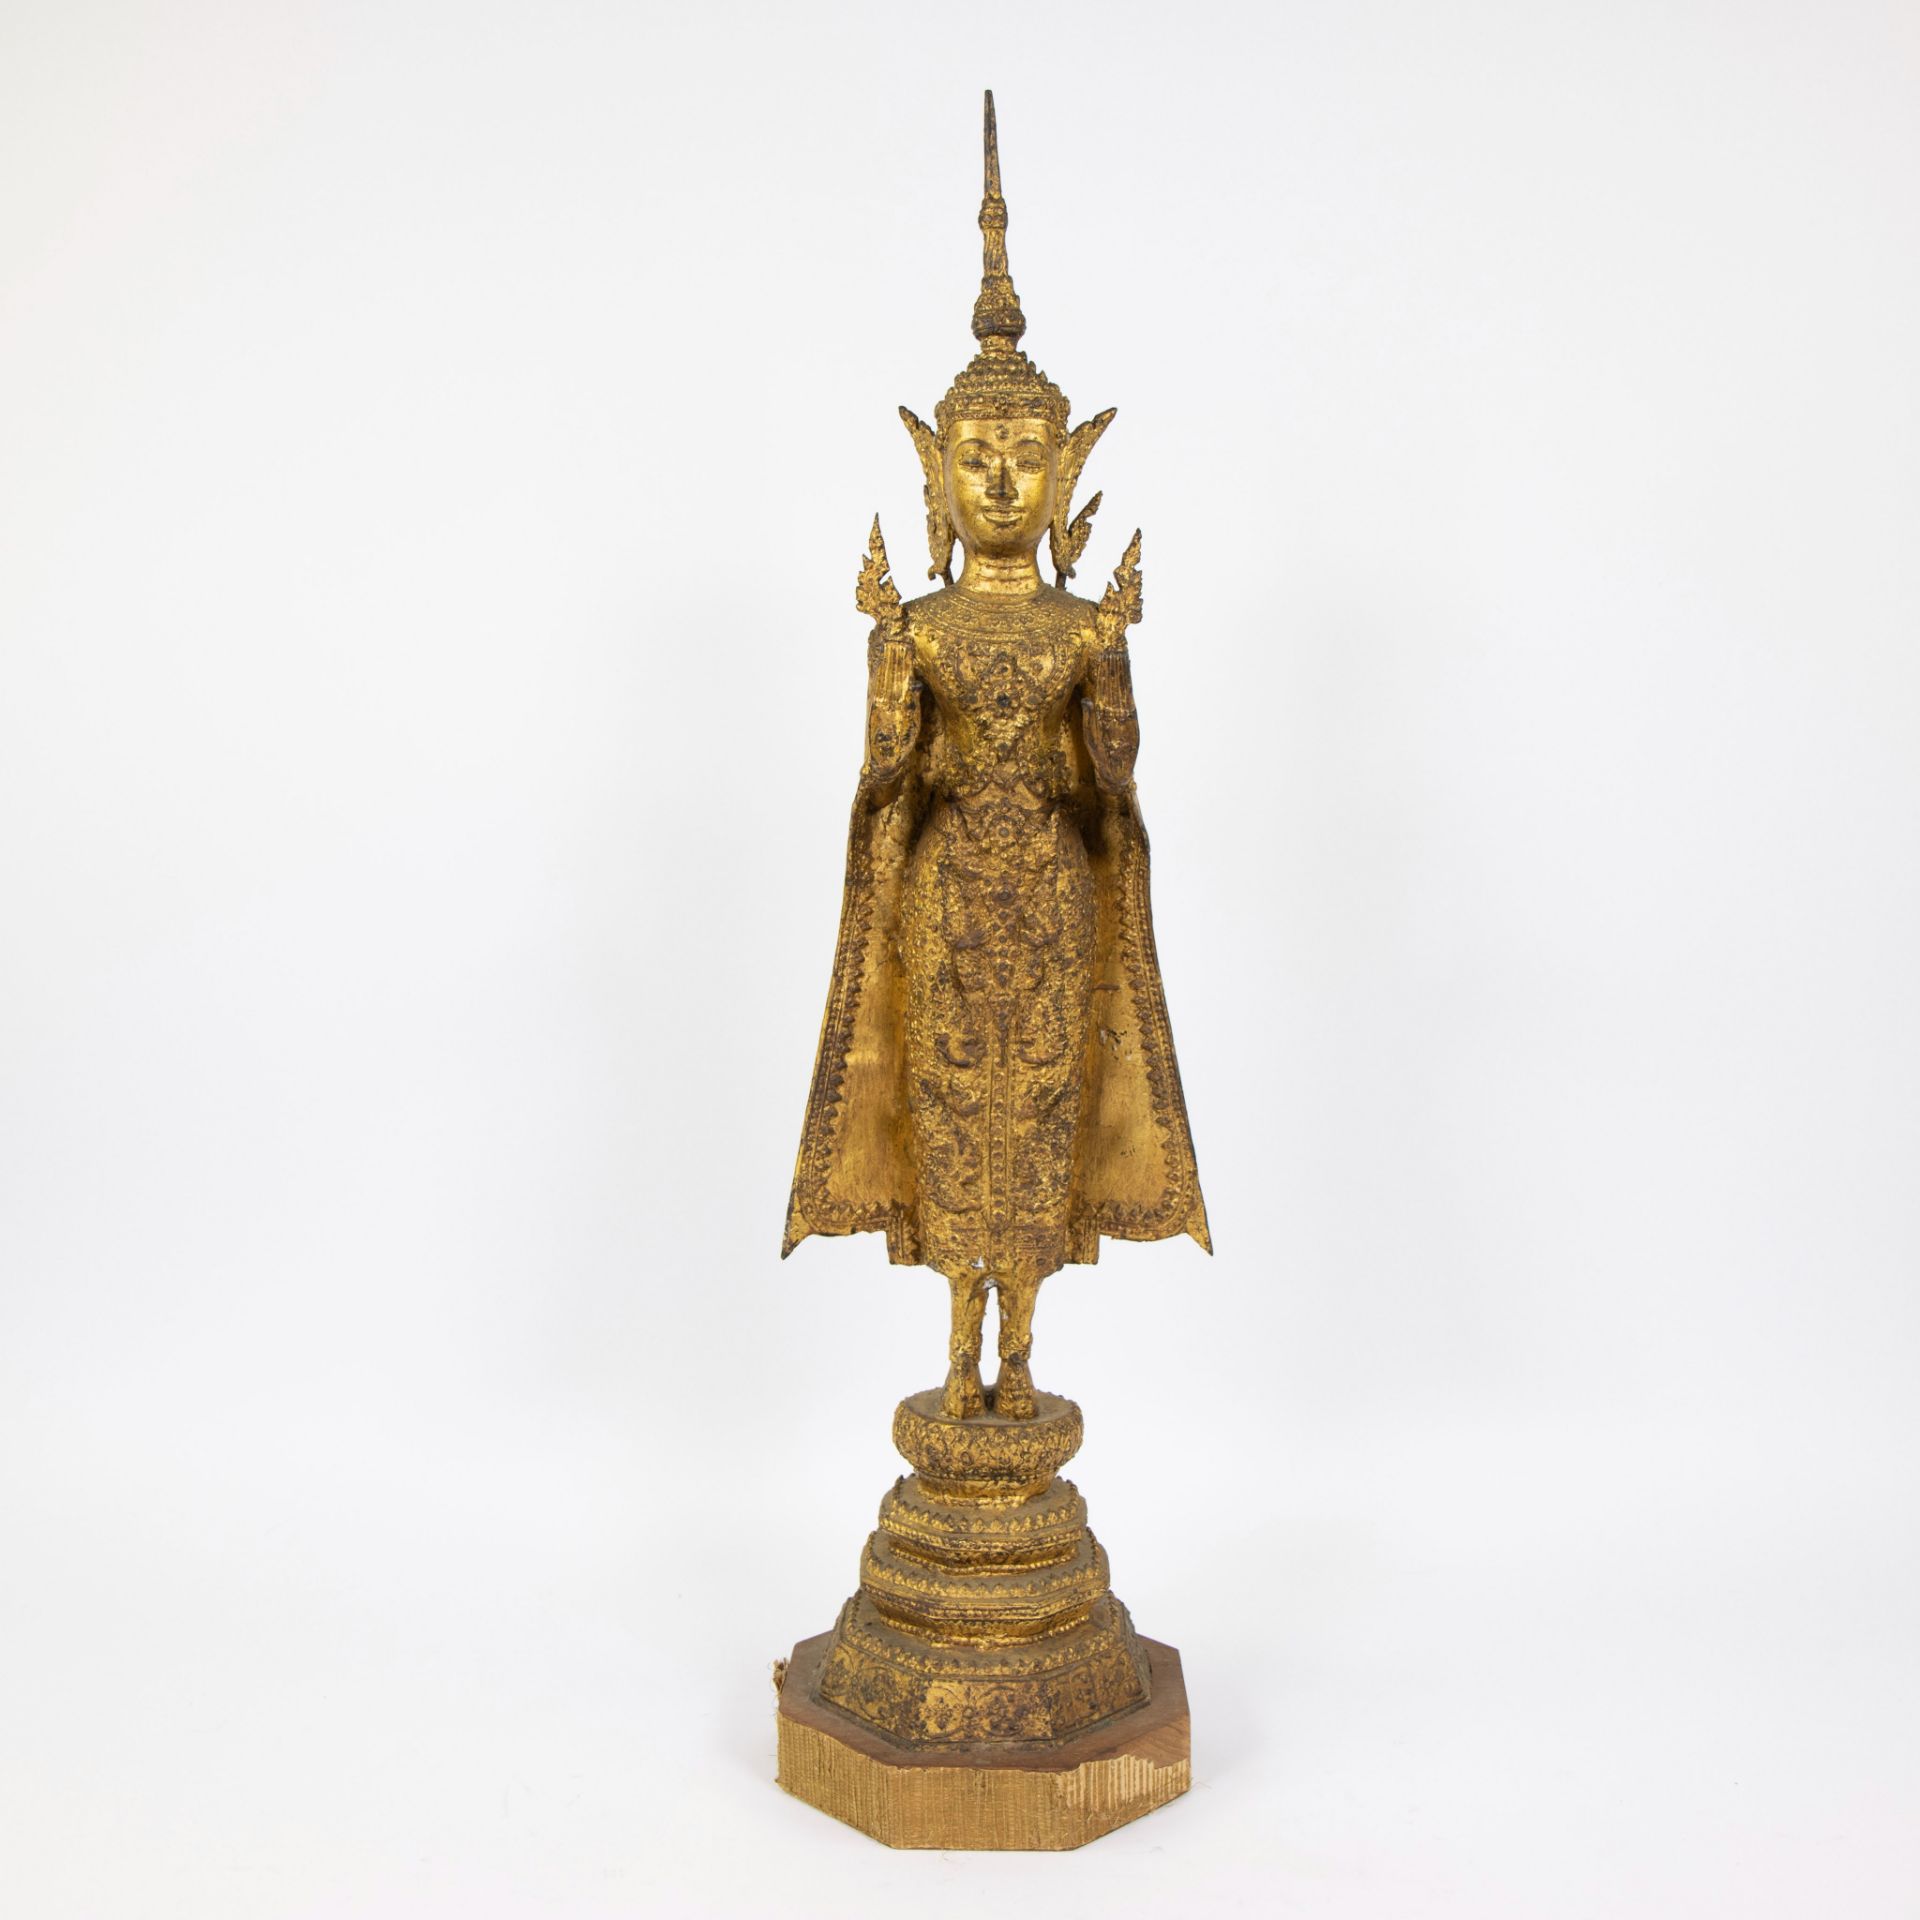 Gilded Rattanakosin standing Buddha, Thailand